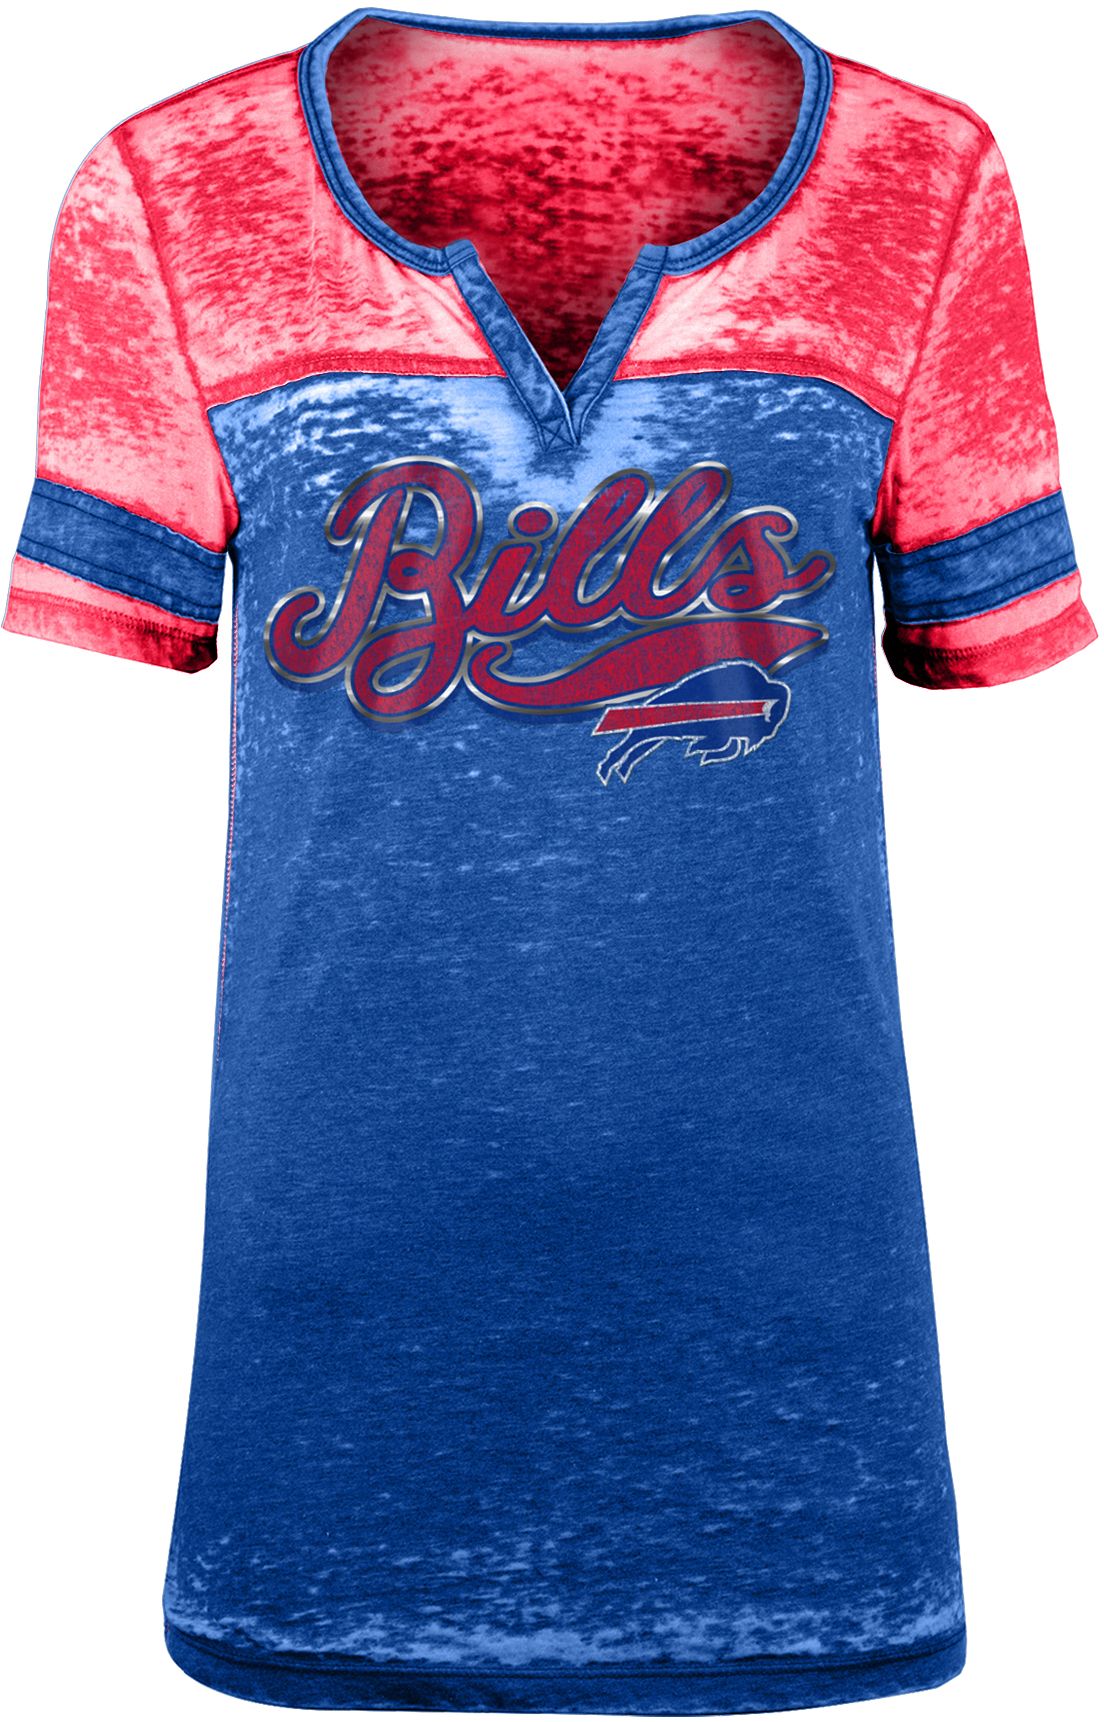 womens buffalo bills jersey